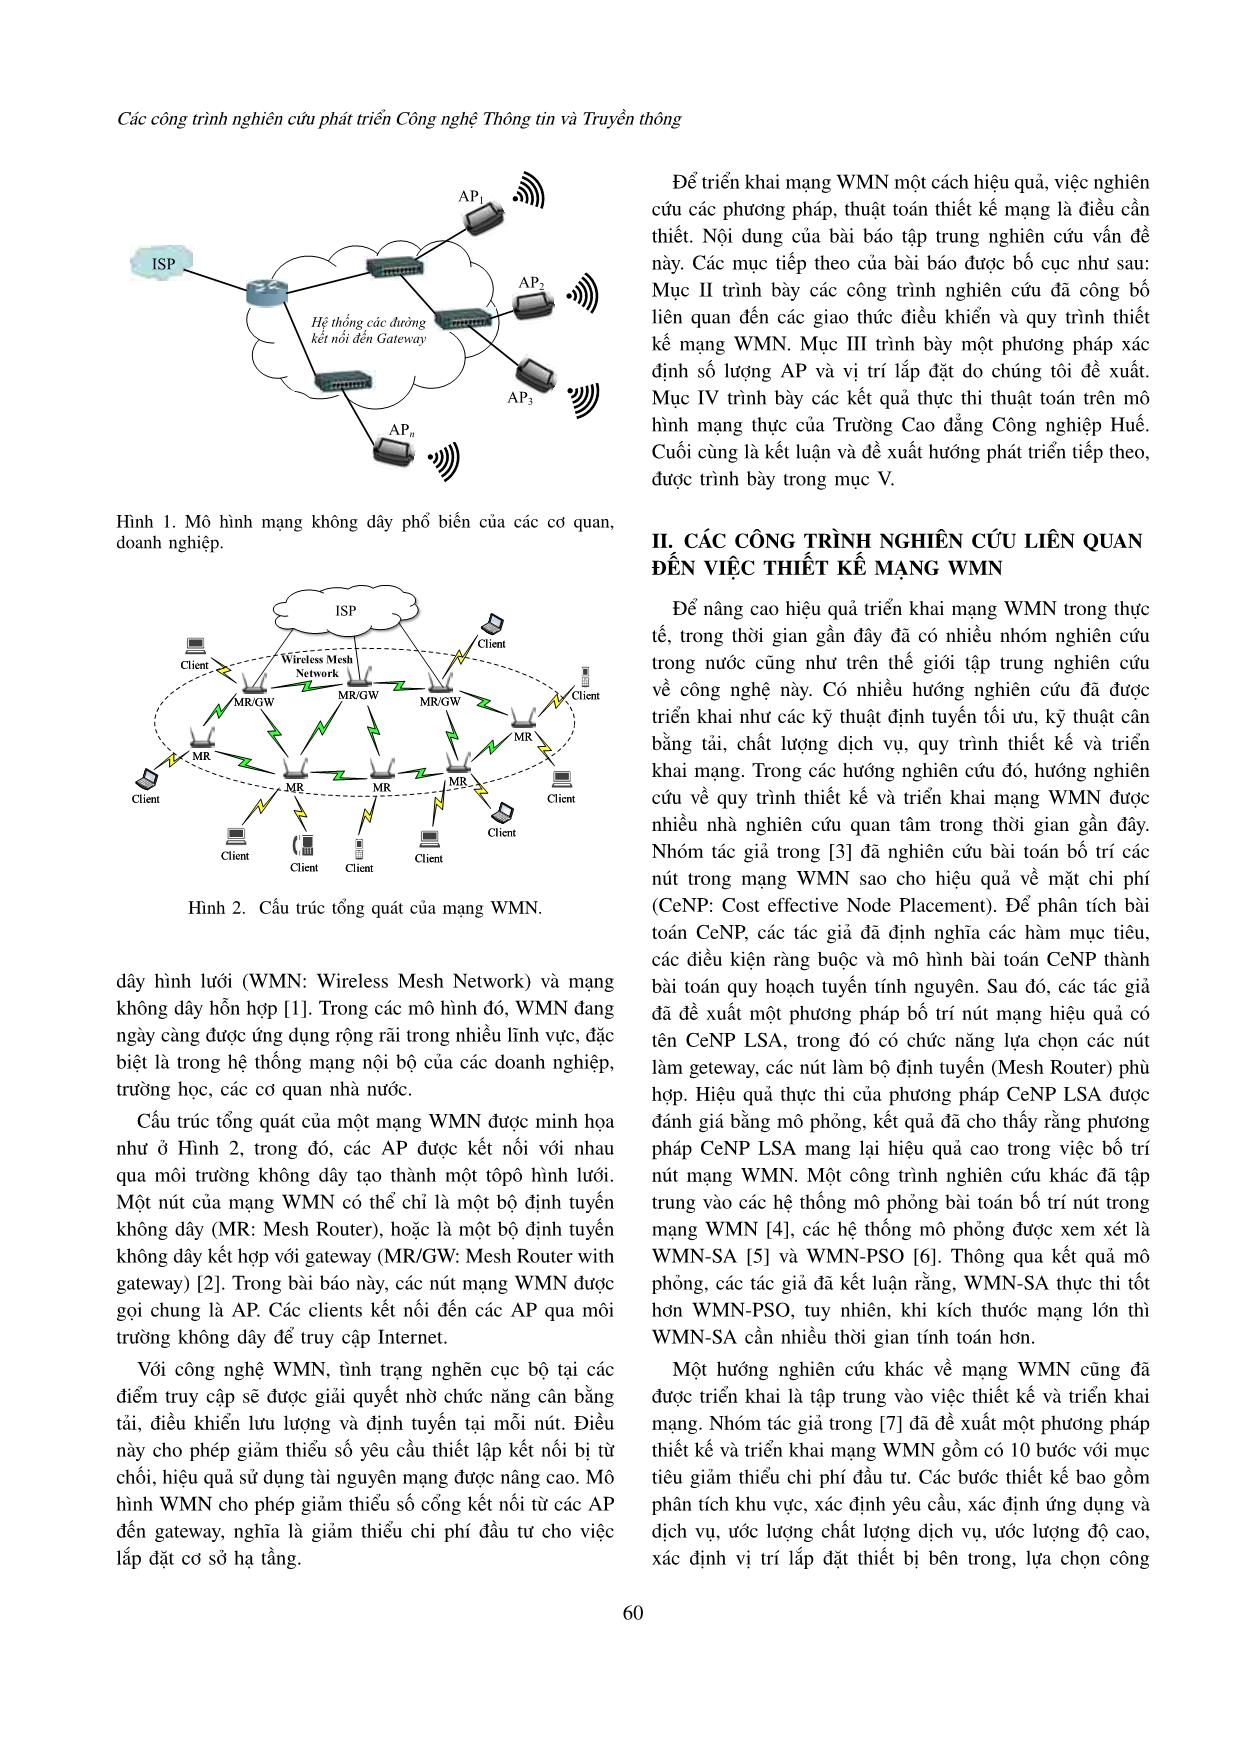 Thiết kế tôpô mạng không dây hình lưới: Một phương pháp mới sử dụng bài toán quy hoạch tuyến tính nguyên trang 2